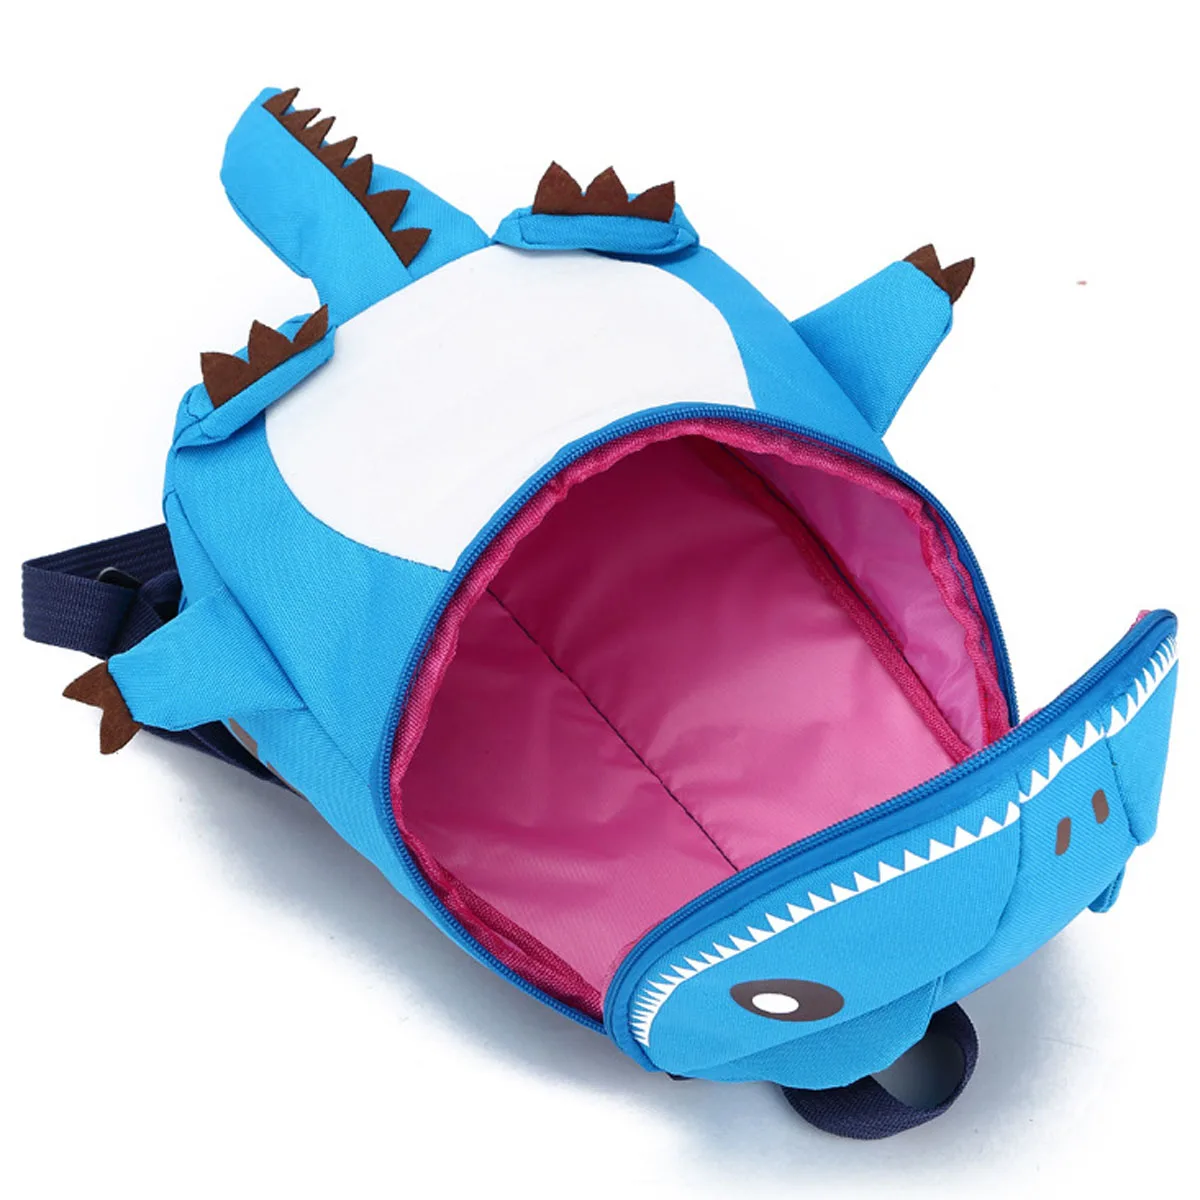 Местный склад 3D Динозавр Детская сумка для мальчиков девочек Водонепроницаемые Детские рюкзаки детская сумка животные принты дорожные сумки игрушки подарки